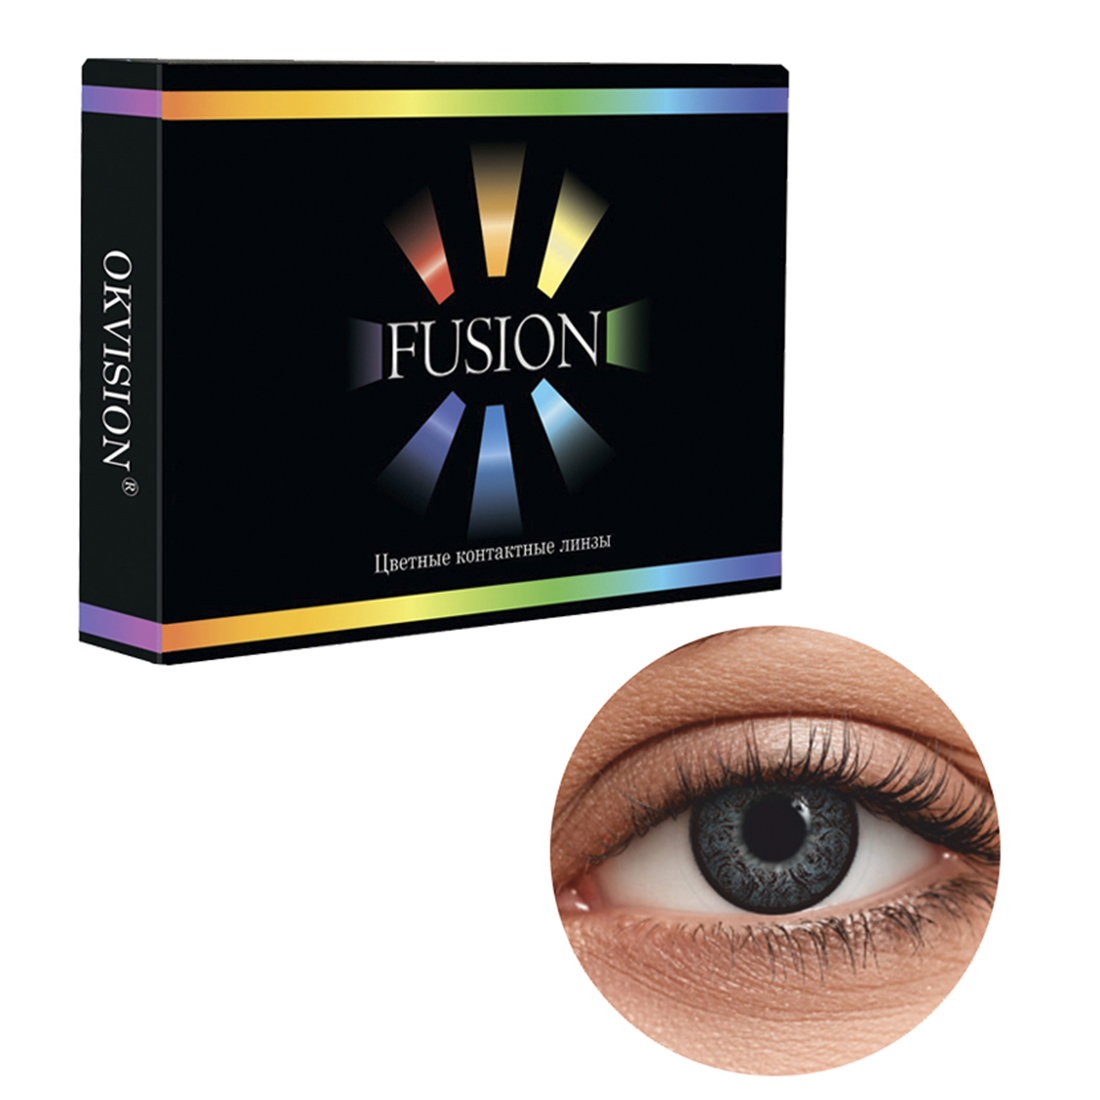 Цветные контактные линзы OKVision Fusion monthly R 8.6 -6.00 цвет Ivory Black 2 шт 1 месяц - фото 1